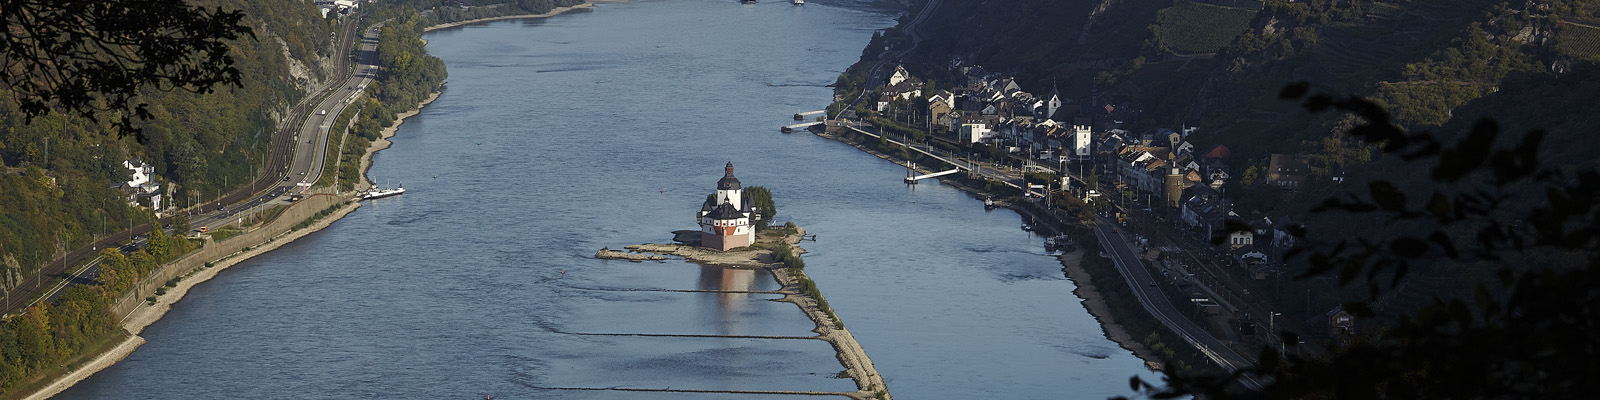 Burg Pfalzgrafenstein im Rhein